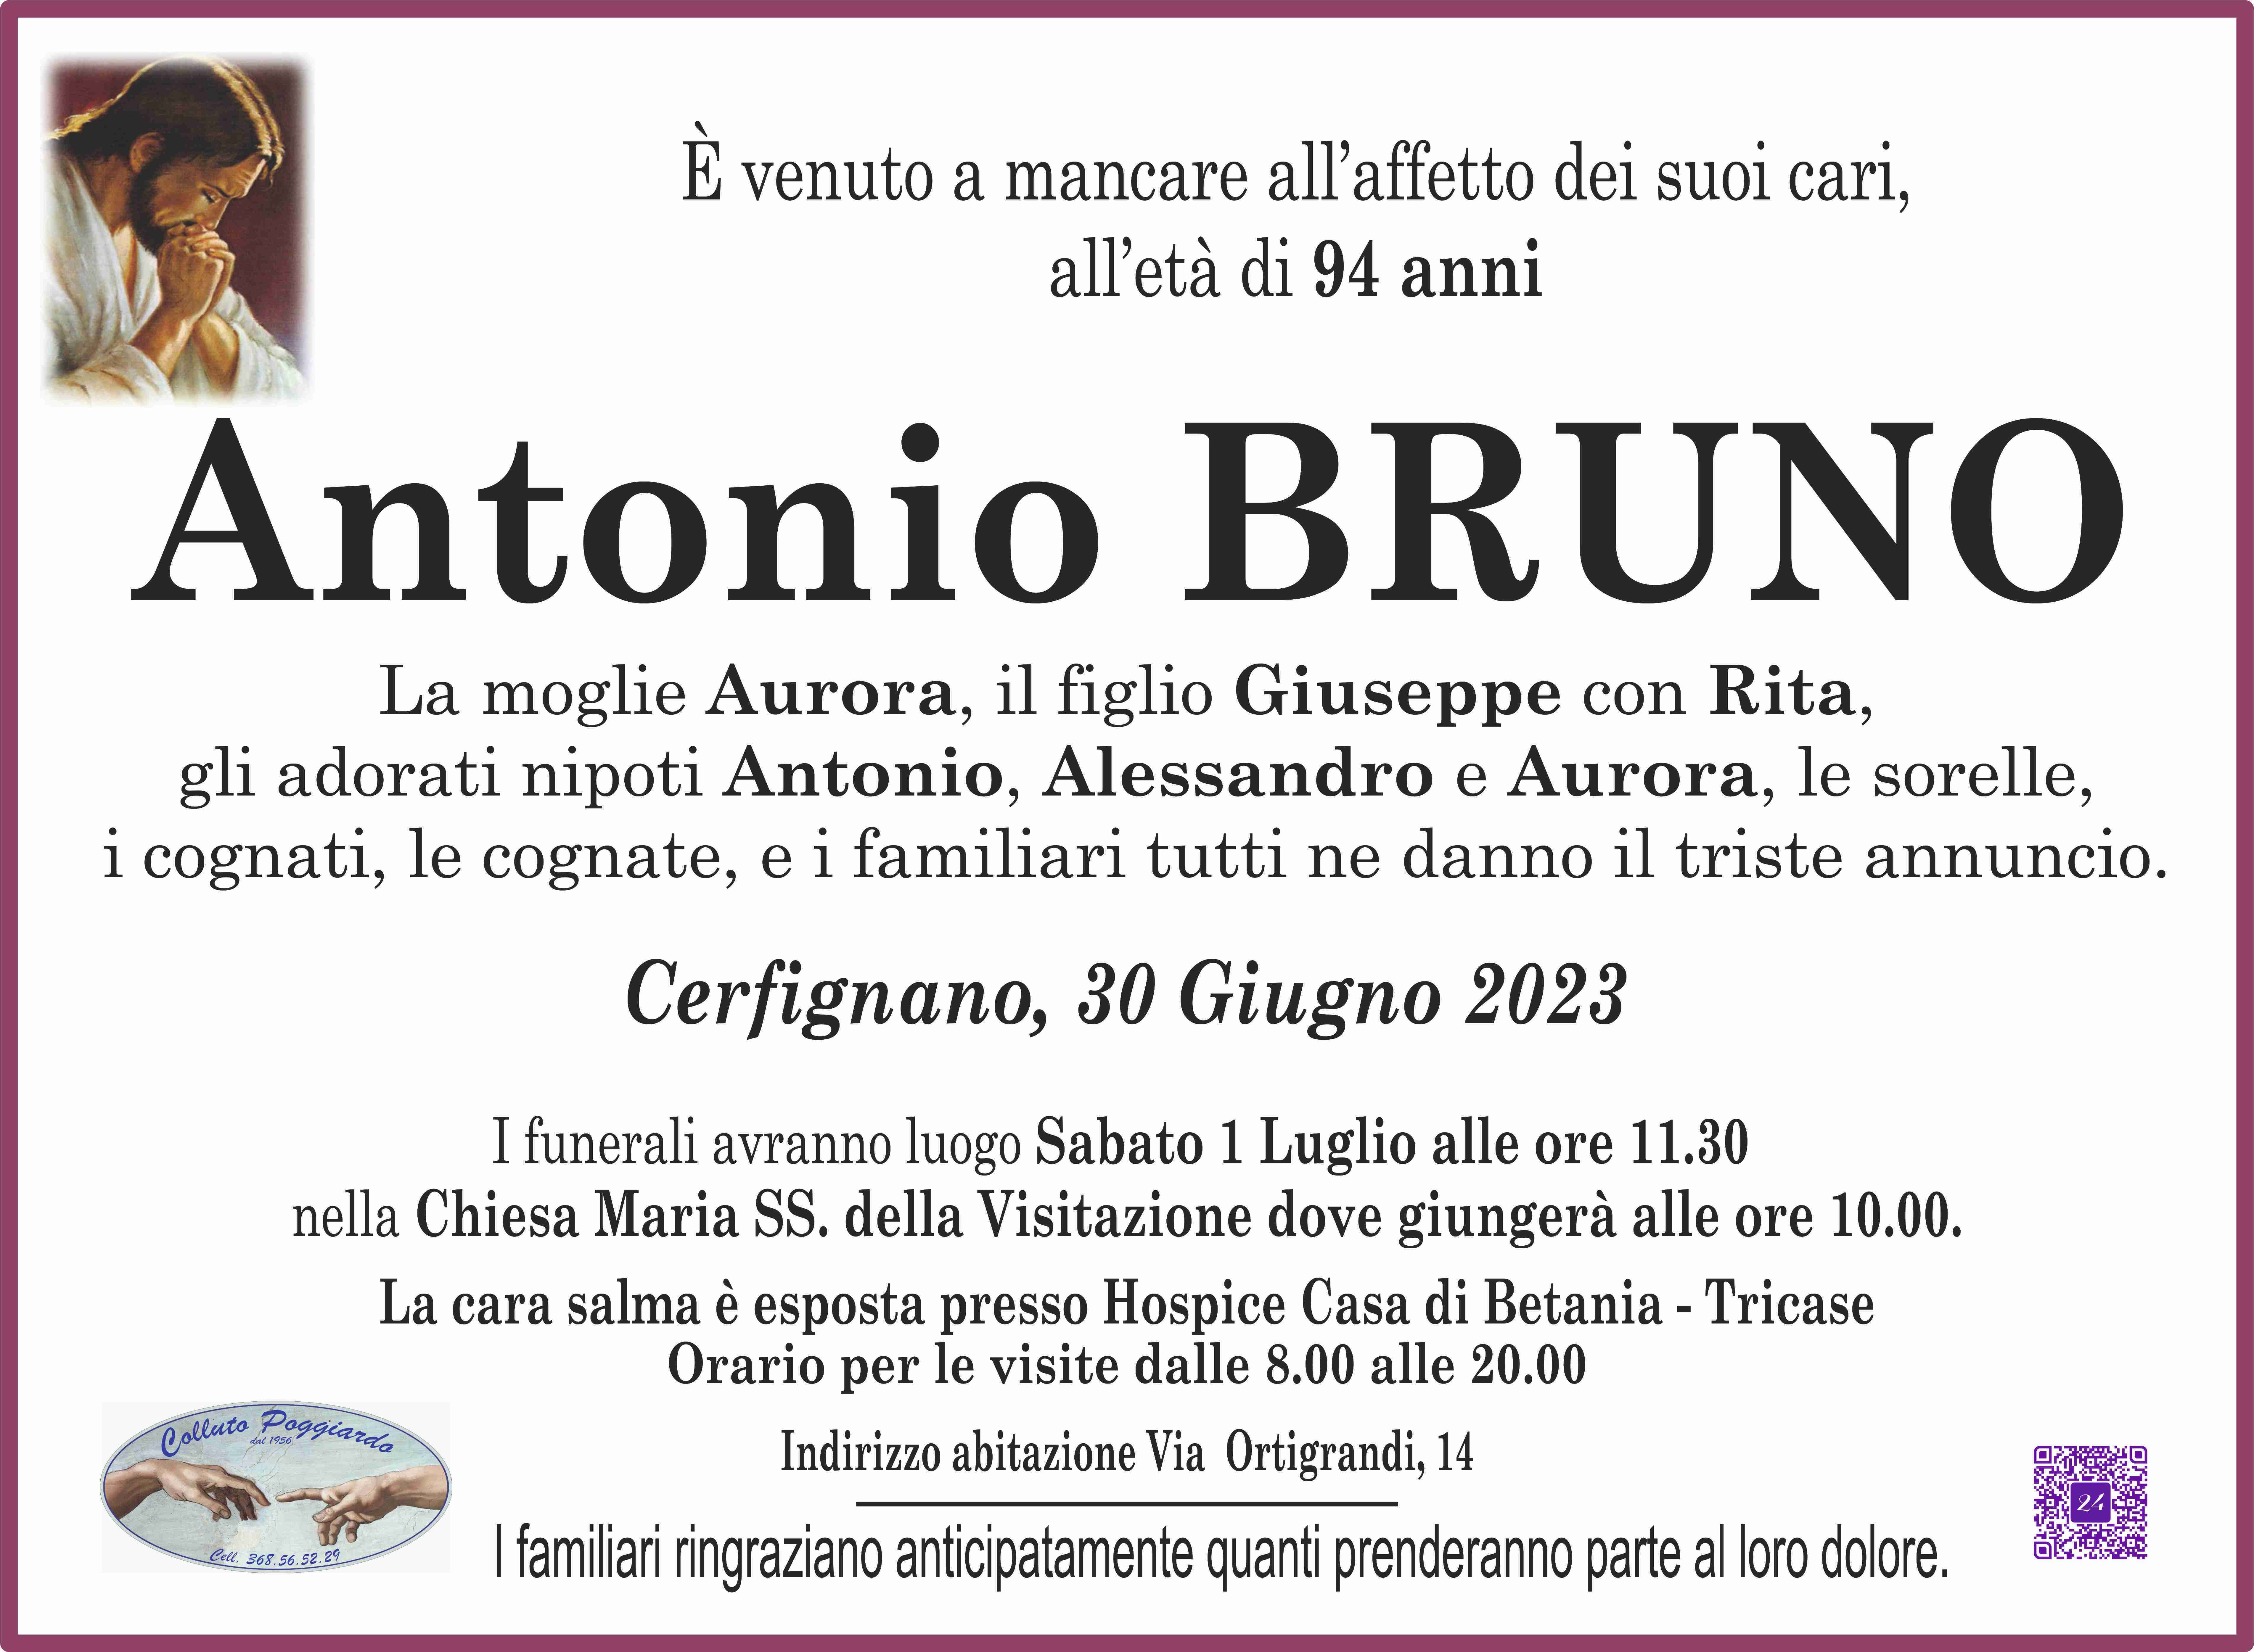 Antonio Bruno